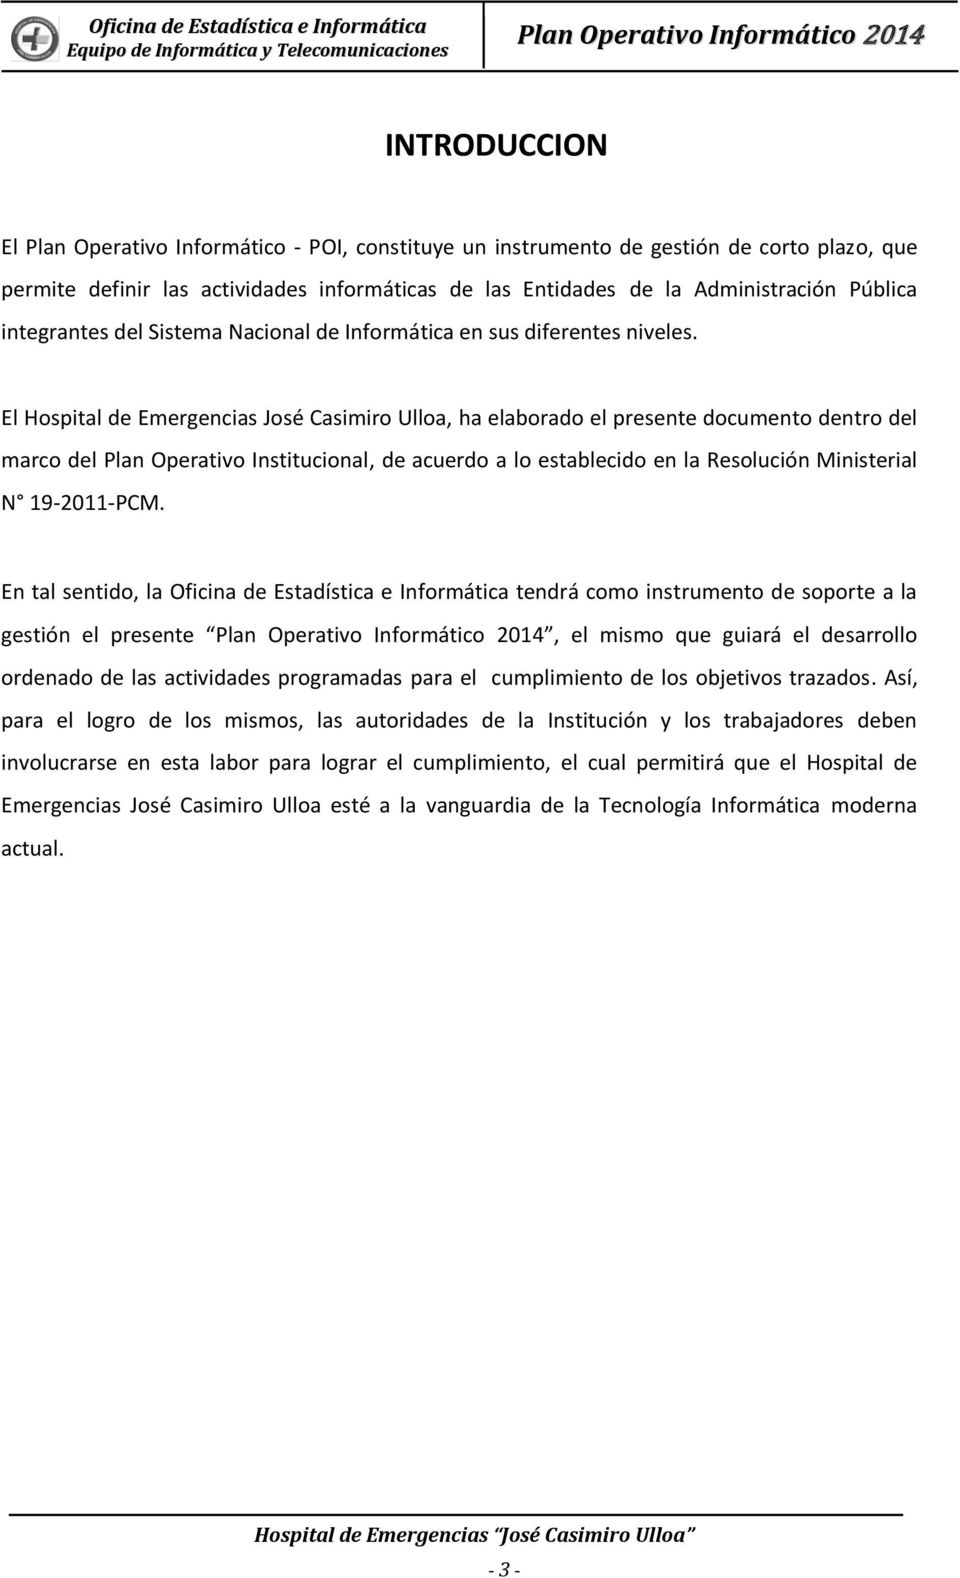 El Hospital de Emergencias José Casimiro Ulloa, ha elaborado el presente documento dentro del marco del Plan Operativo Institucional, de acuerdo a lo establecido en la Resolución Ministerial N